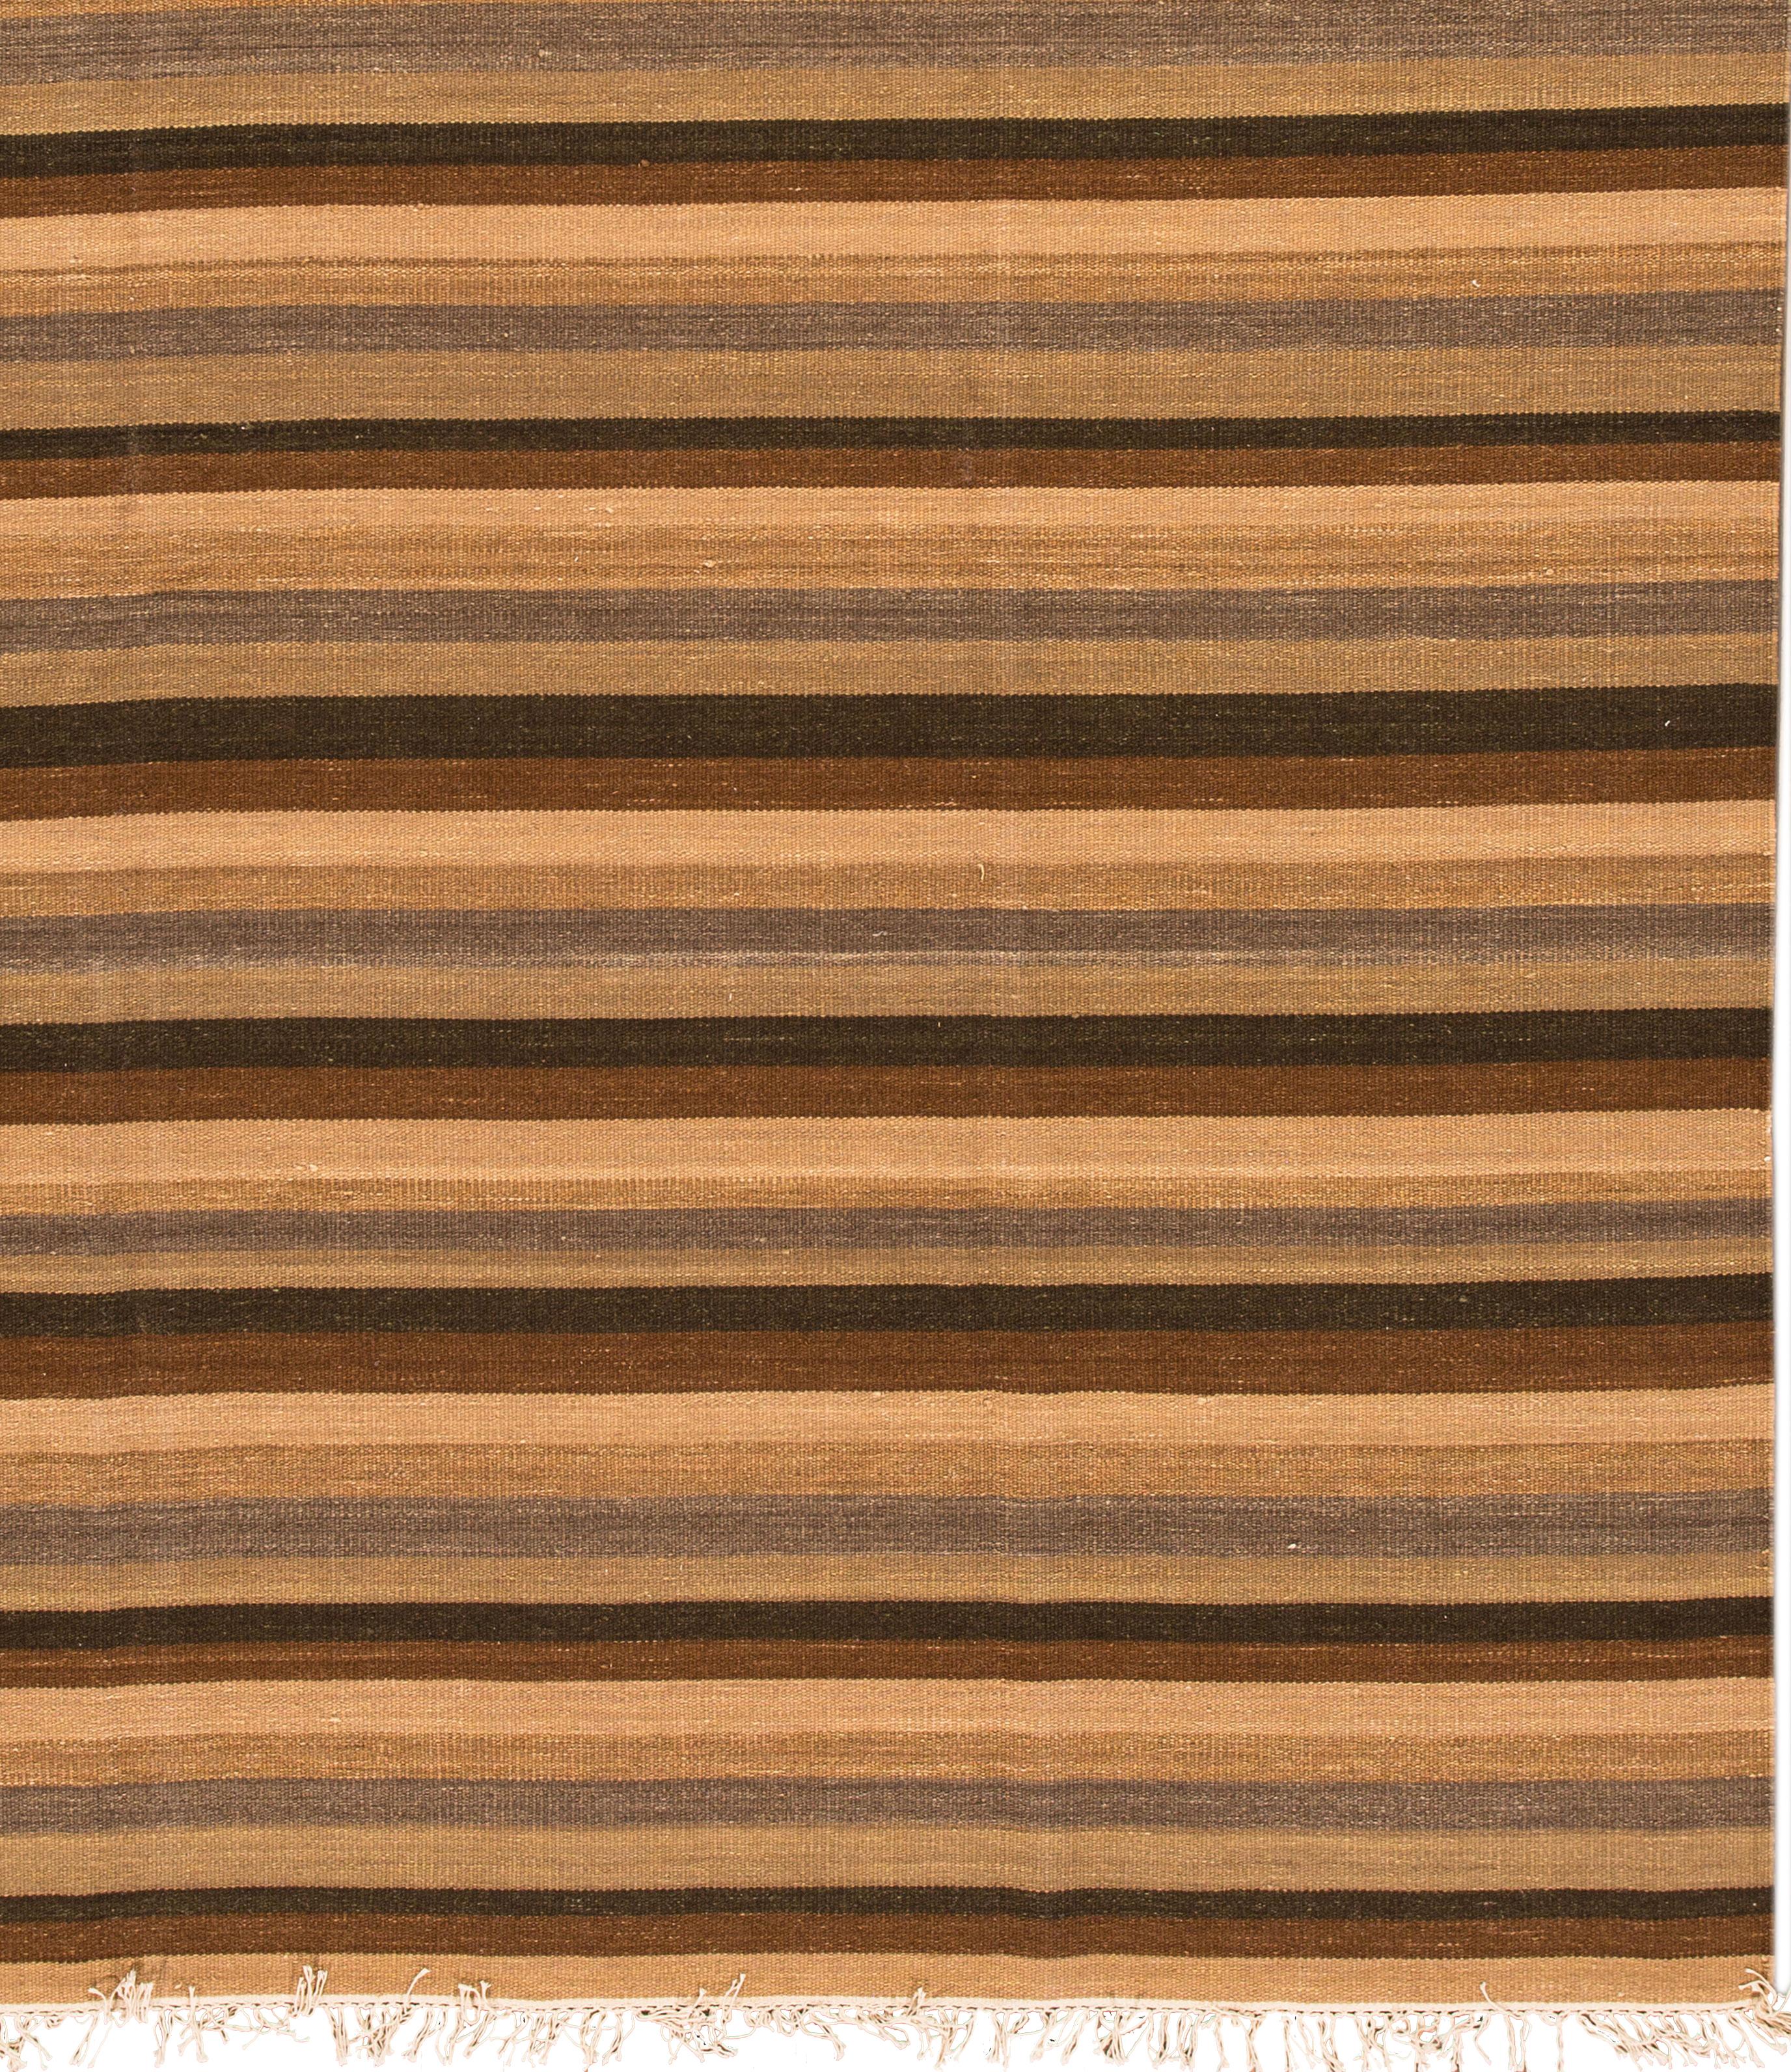 Tappeto Kilim turco del XXI secolo, annodato a mano in lana con un campo a righe marrone scuro, marrone chiaro e marrone scuro.
Questo tappeto misura 7' 10